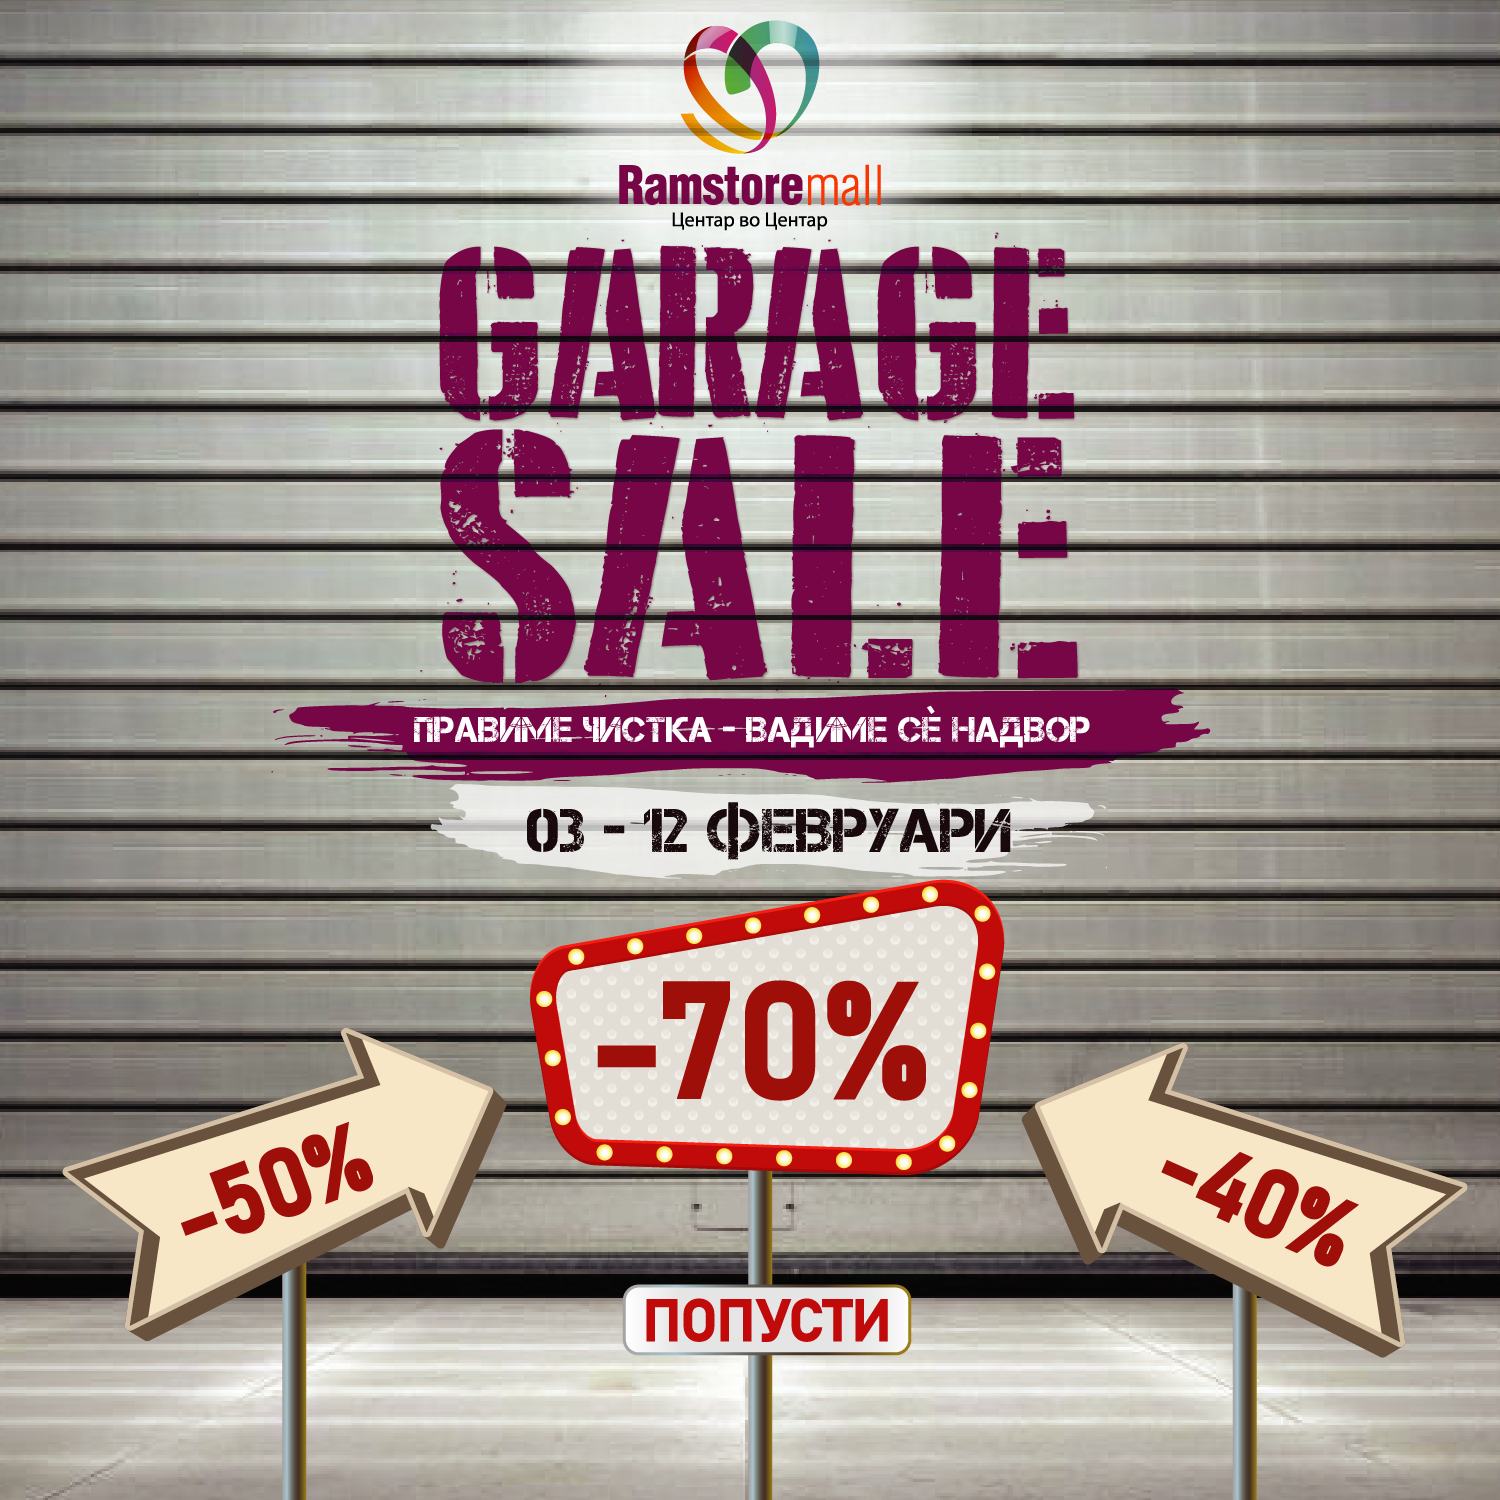 Garage sale_fb_insta (002)